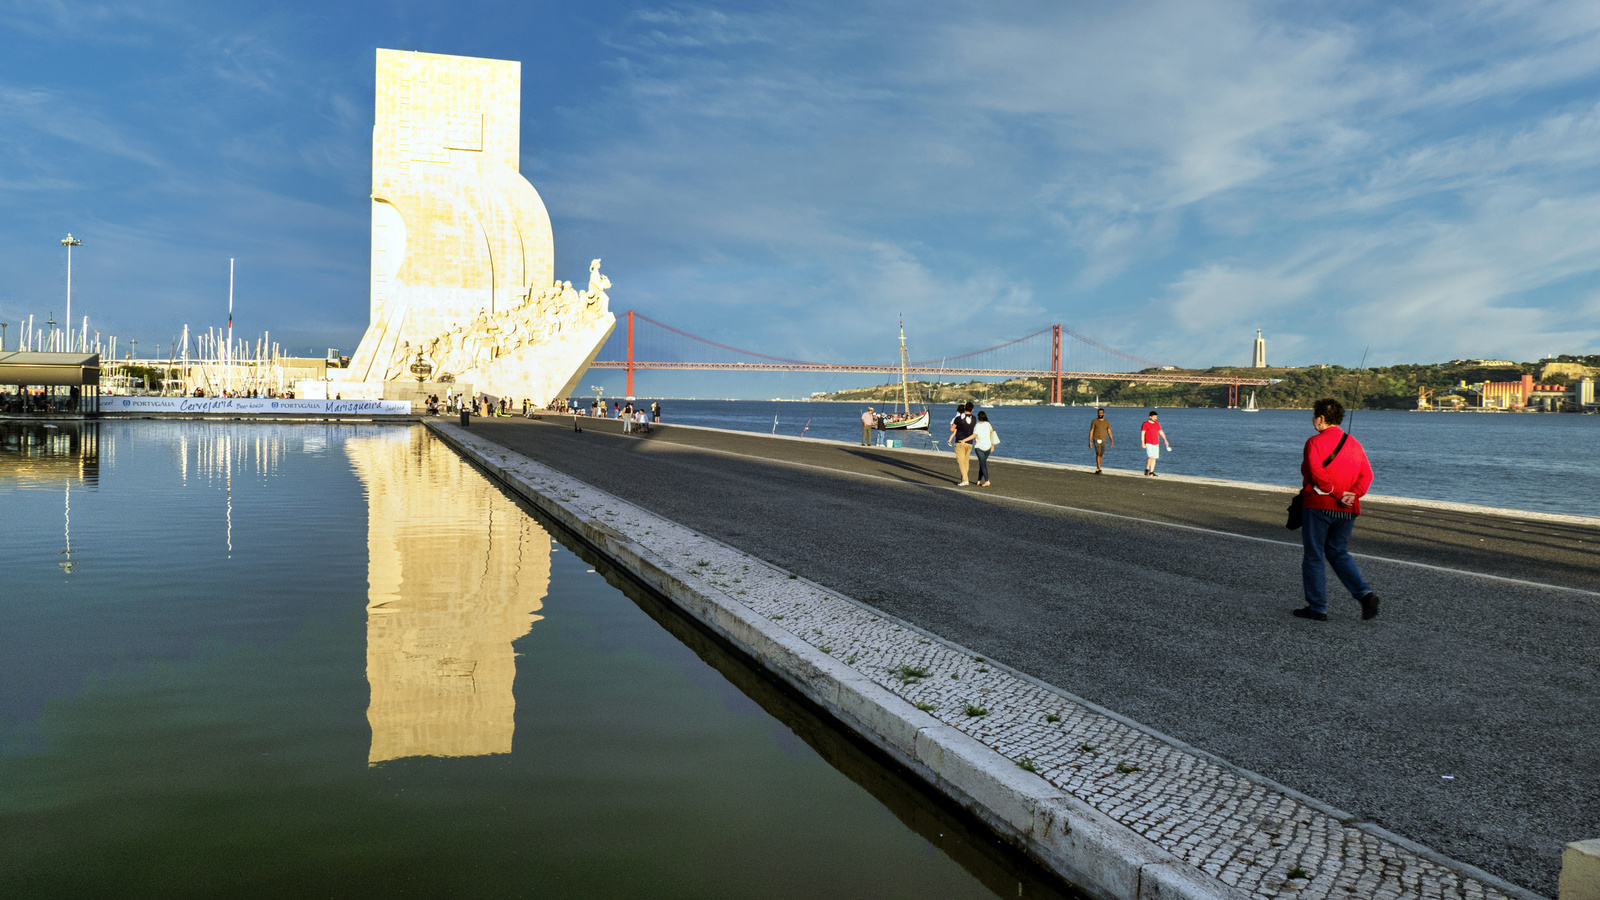 Lisbon - Belém - Padrão dos Descobrimentos felfedezők emlékműve